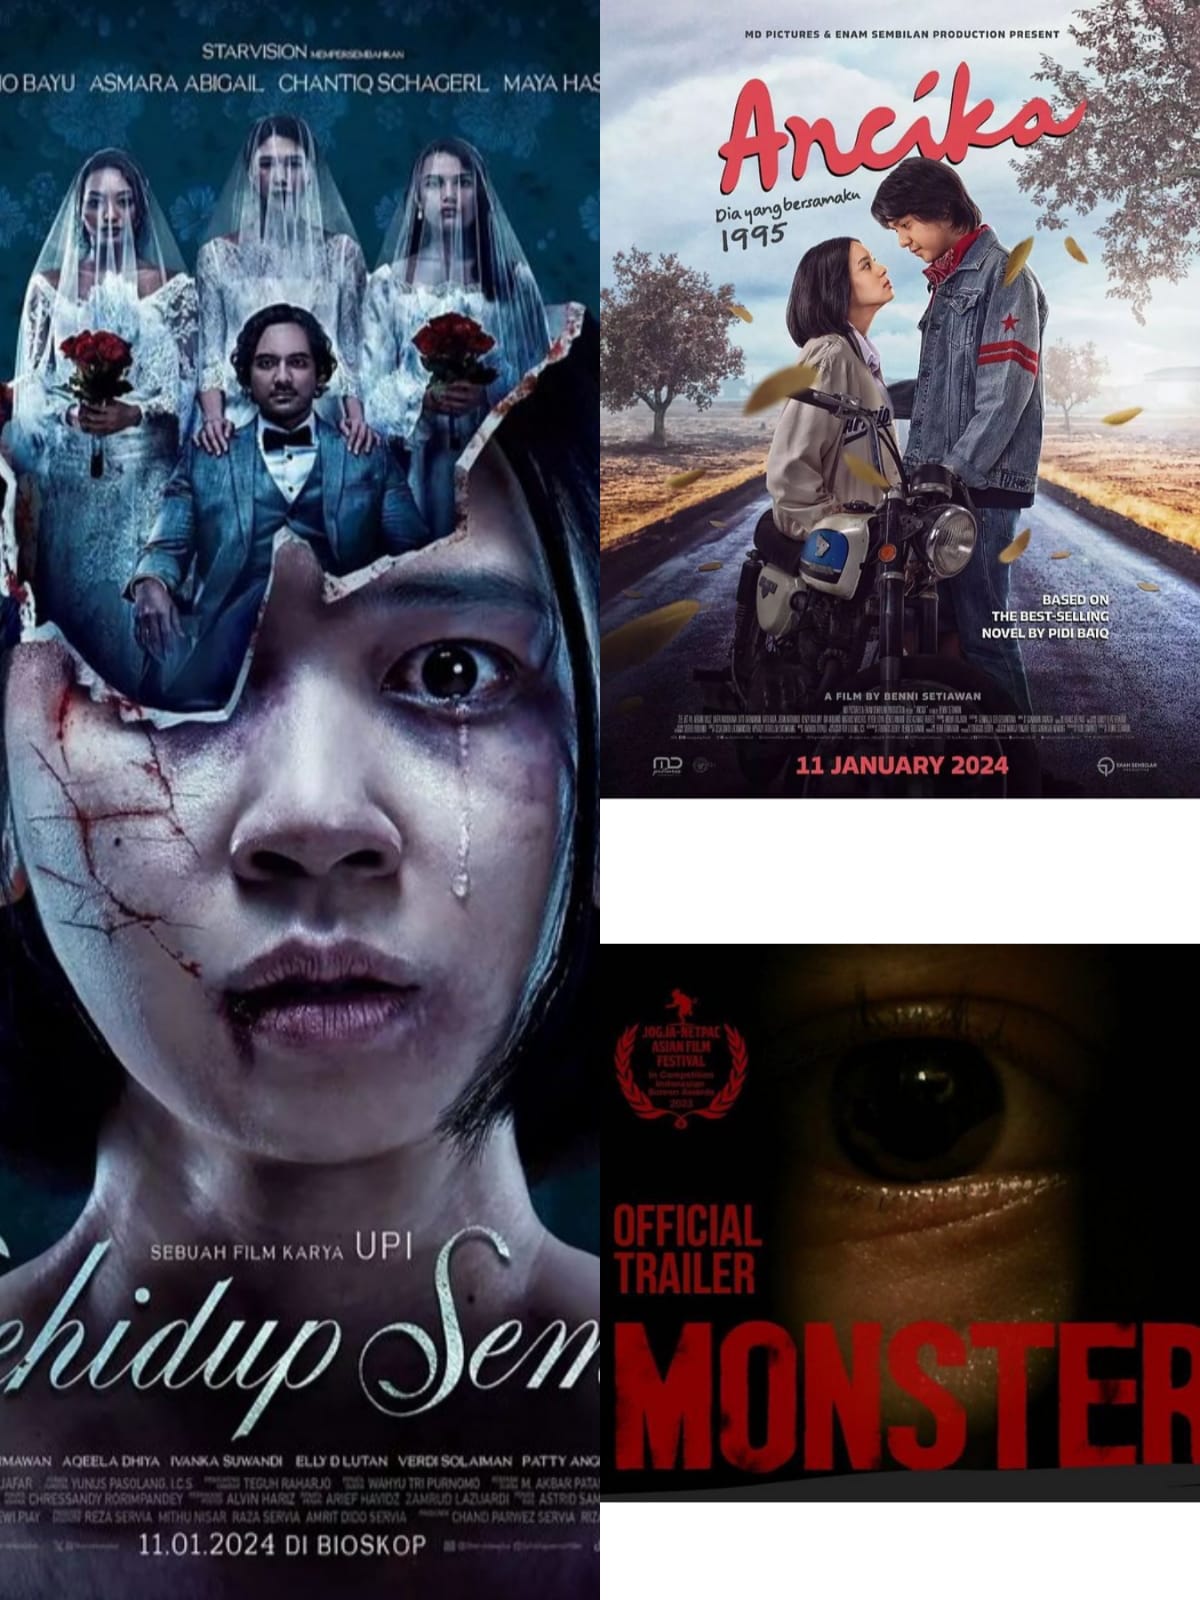 Daftar Film Bioskop Indonesia Tayang Januari 2024 Rakcerid 6983